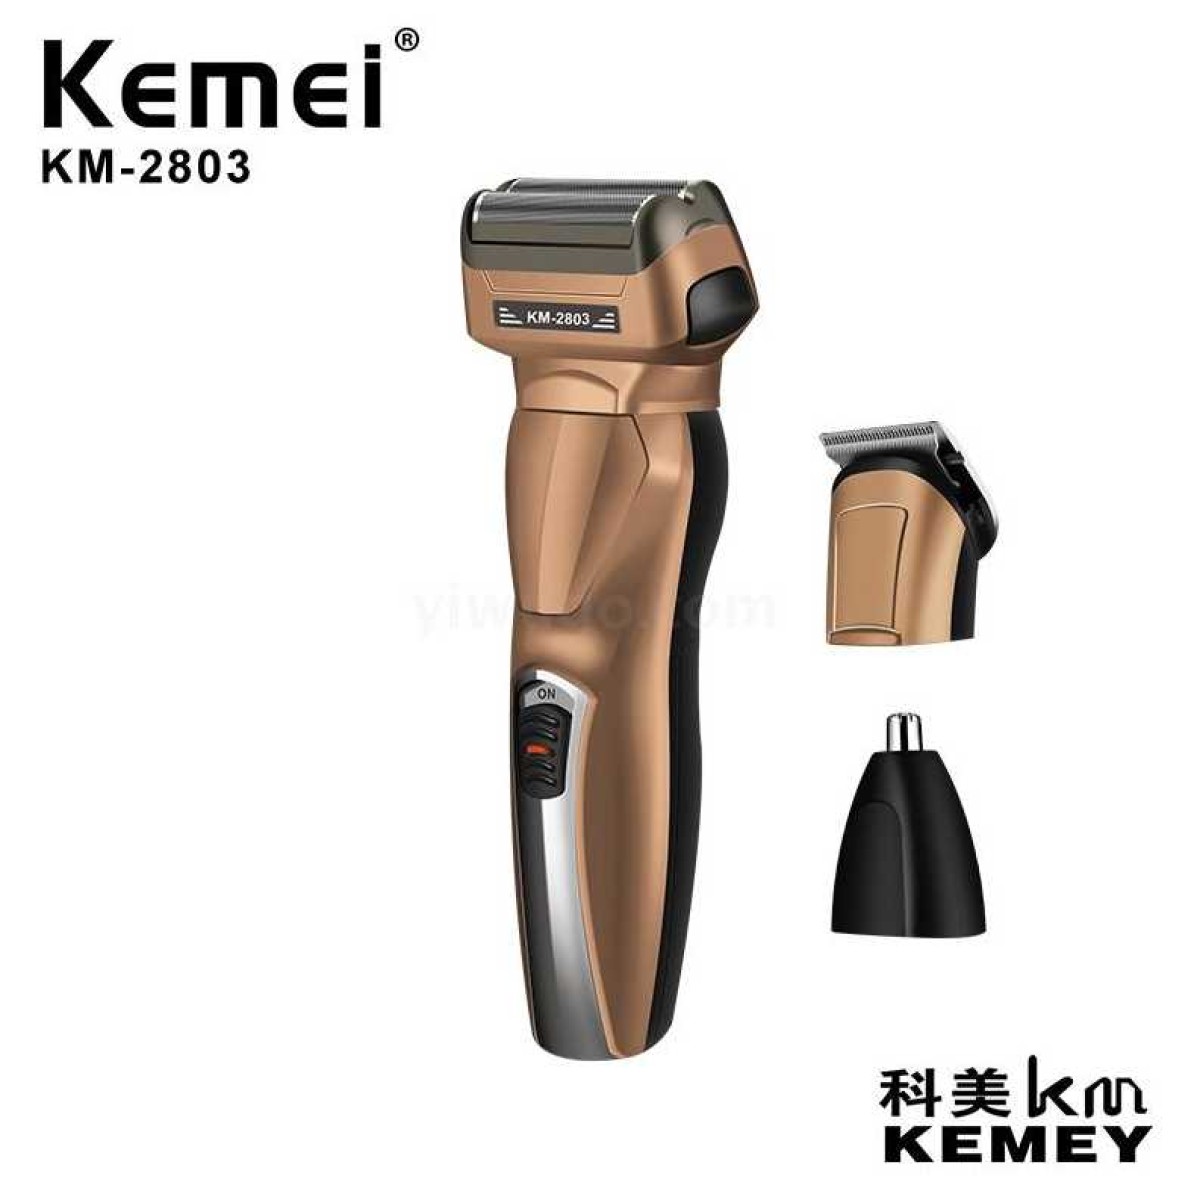 Ξυριστική μηχανή - KM-2803 - Kemei